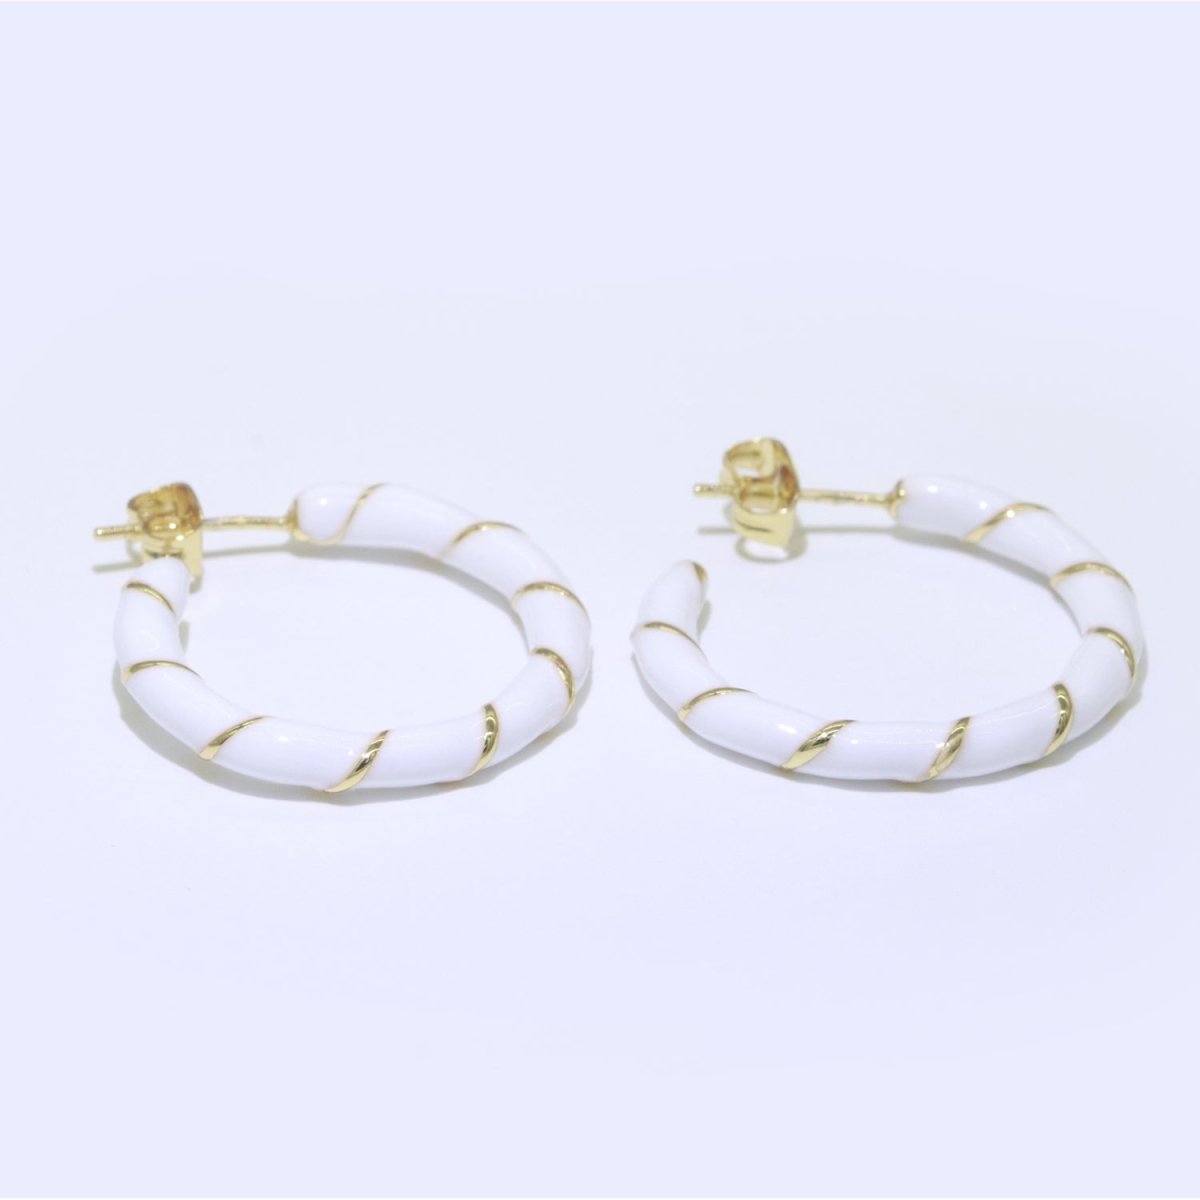 White Enamel Hoop Earring with Gold Swirl 26mm Hoop earring Jewelry Gift T-009 - DLUXCA